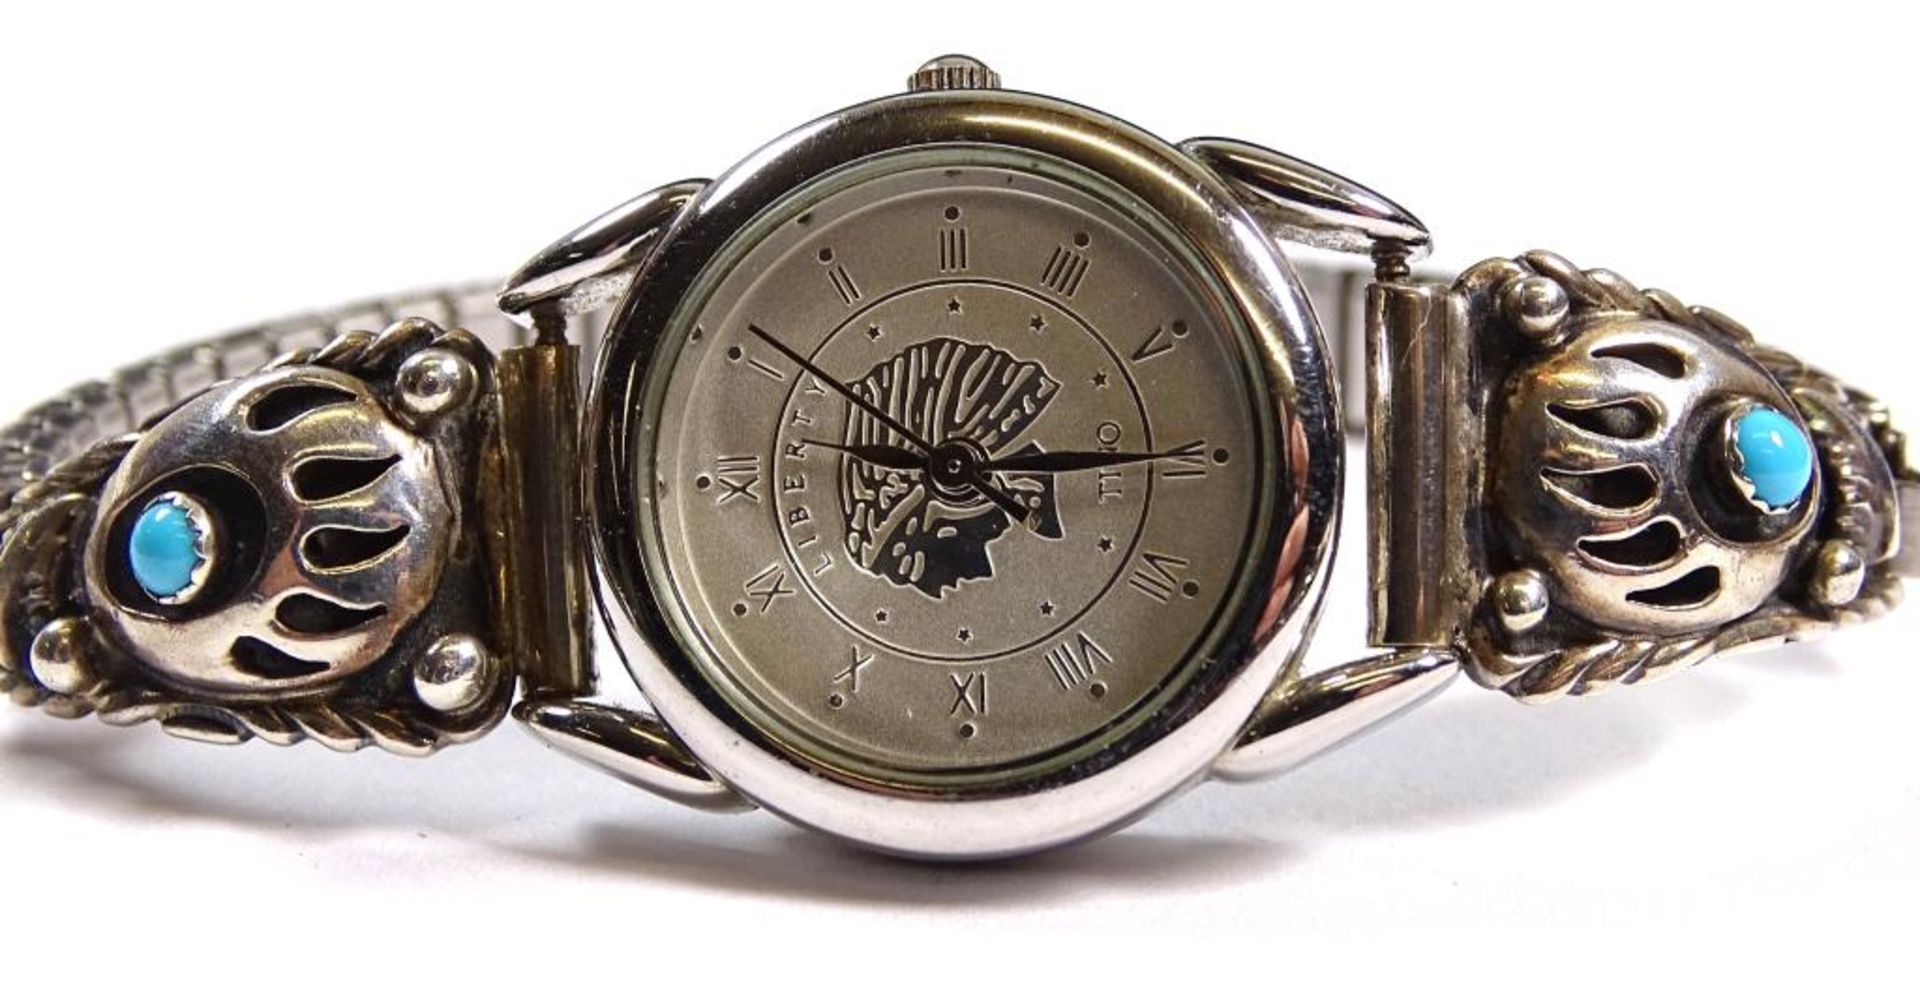 Damen Armbanduhr "Tino",Quartz,seitlich Silber mit türkisen , Band Edelstahl,derzeit läuft die - Bild 2 aus 3